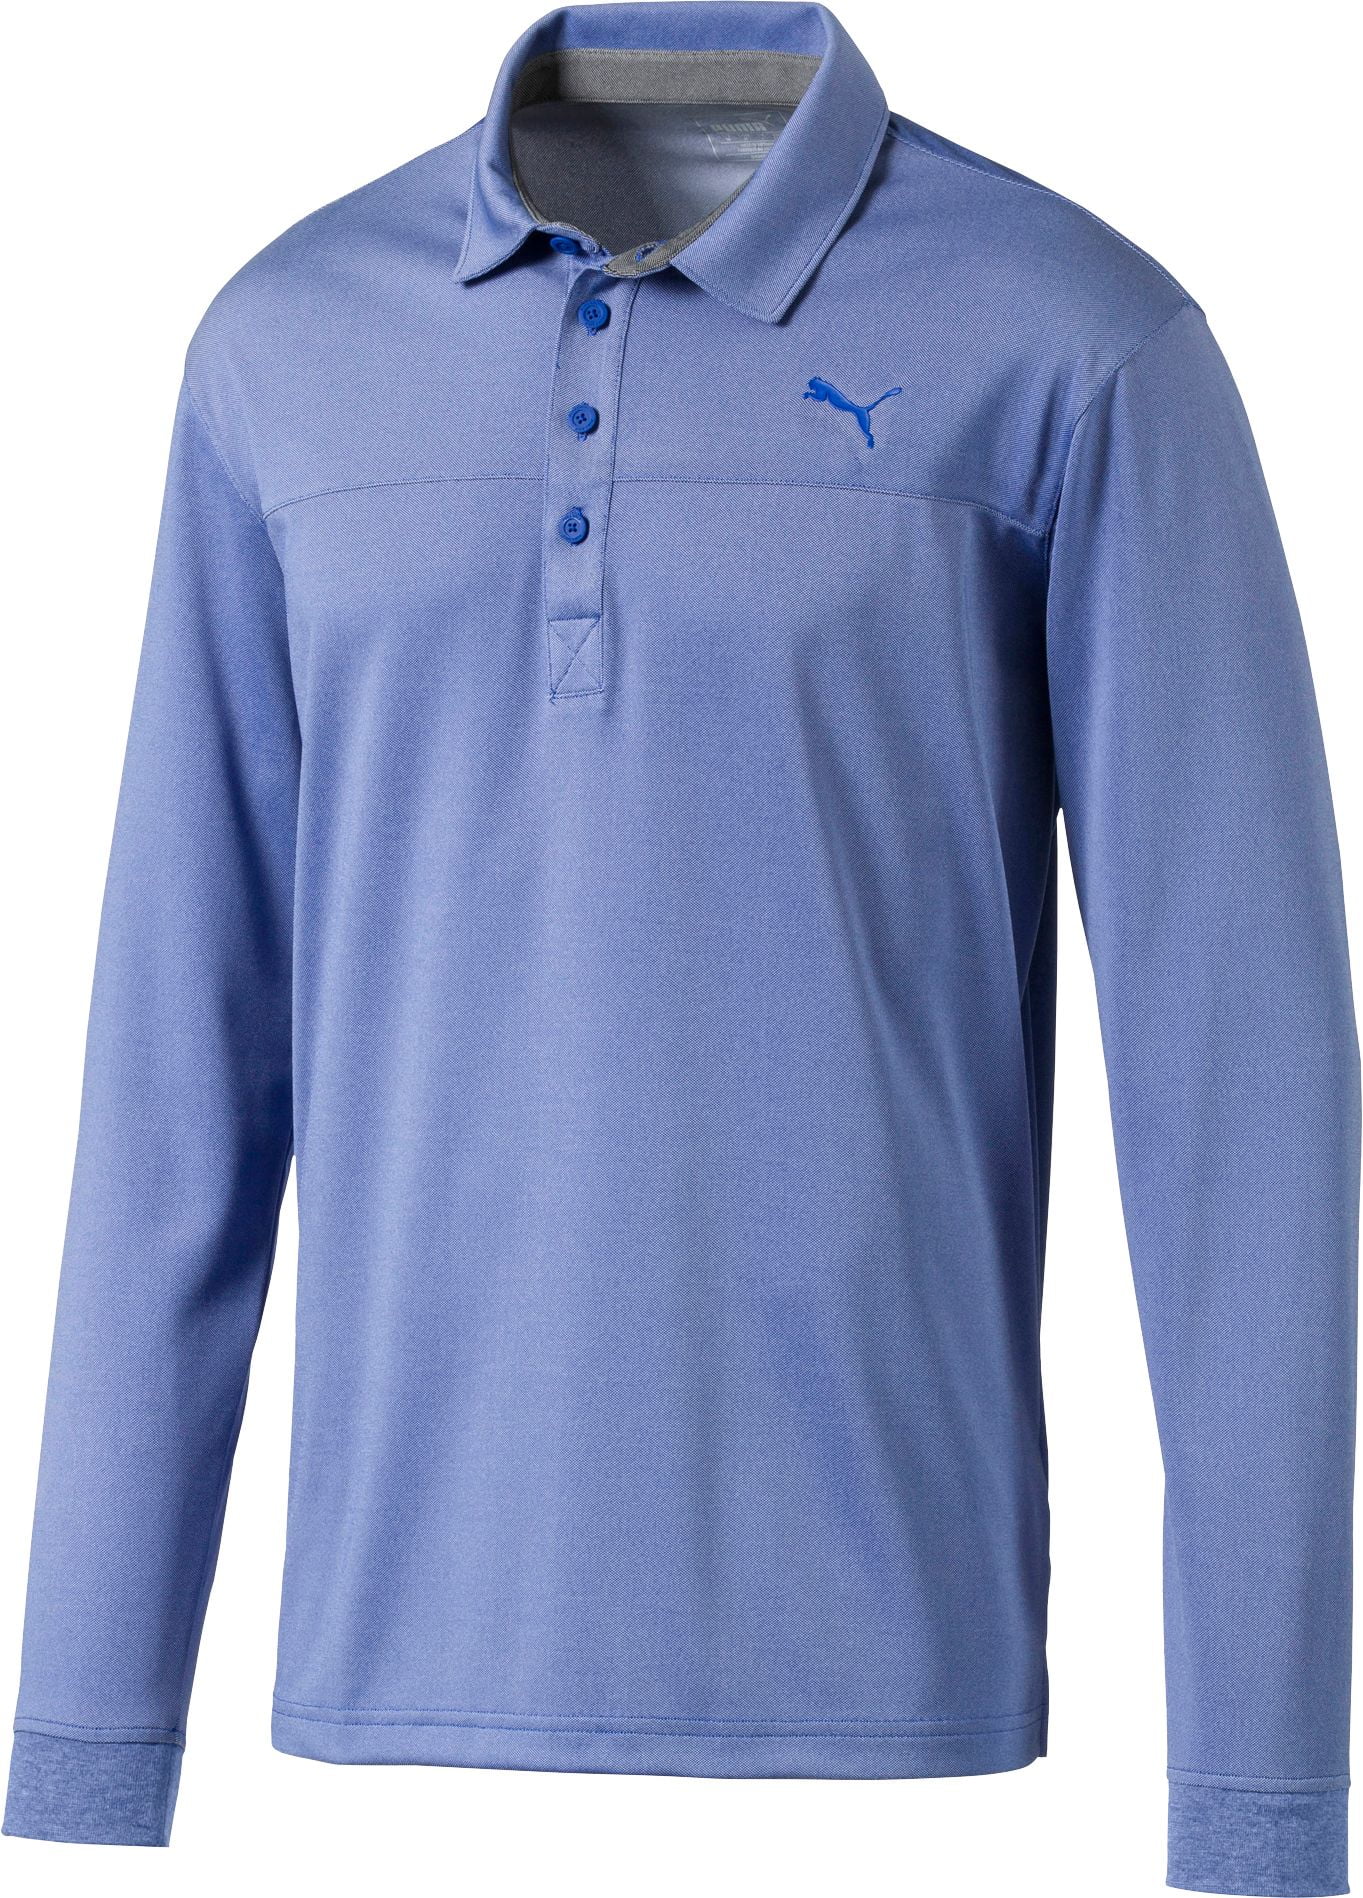 PUMA Men's Long Sleeve Golf Polo - Walmart.com - Walmart.com